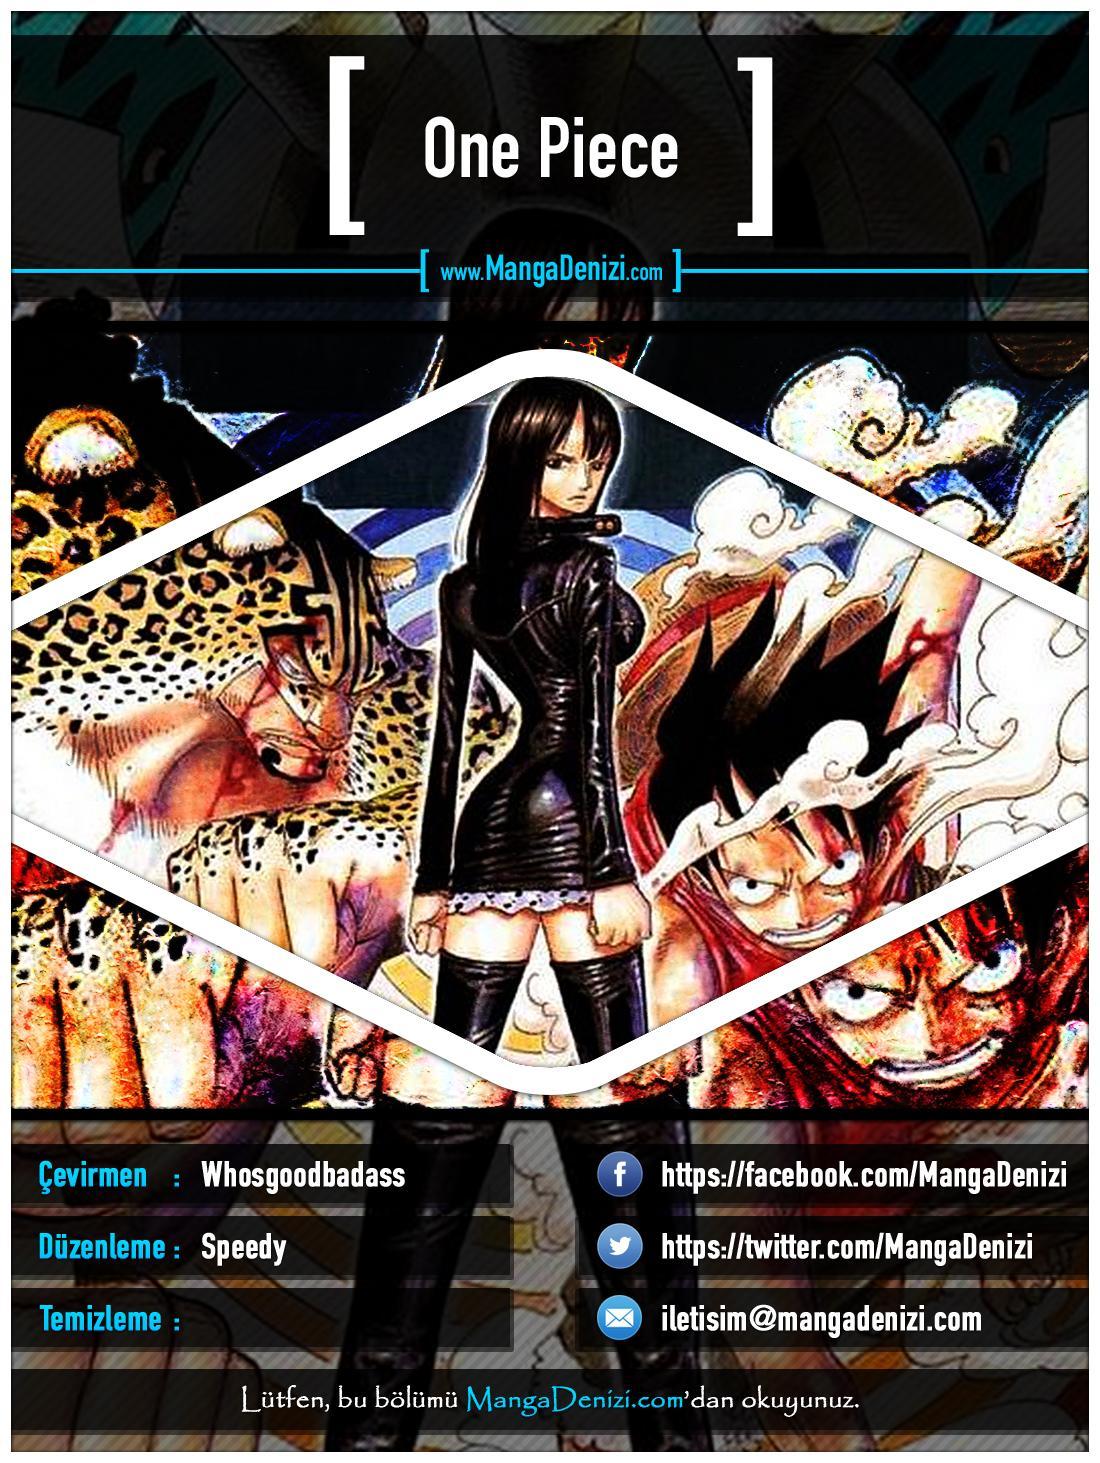 One Piece [Renkli] mangasının 0335 bölümünün 1. sayfasını okuyorsunuz.